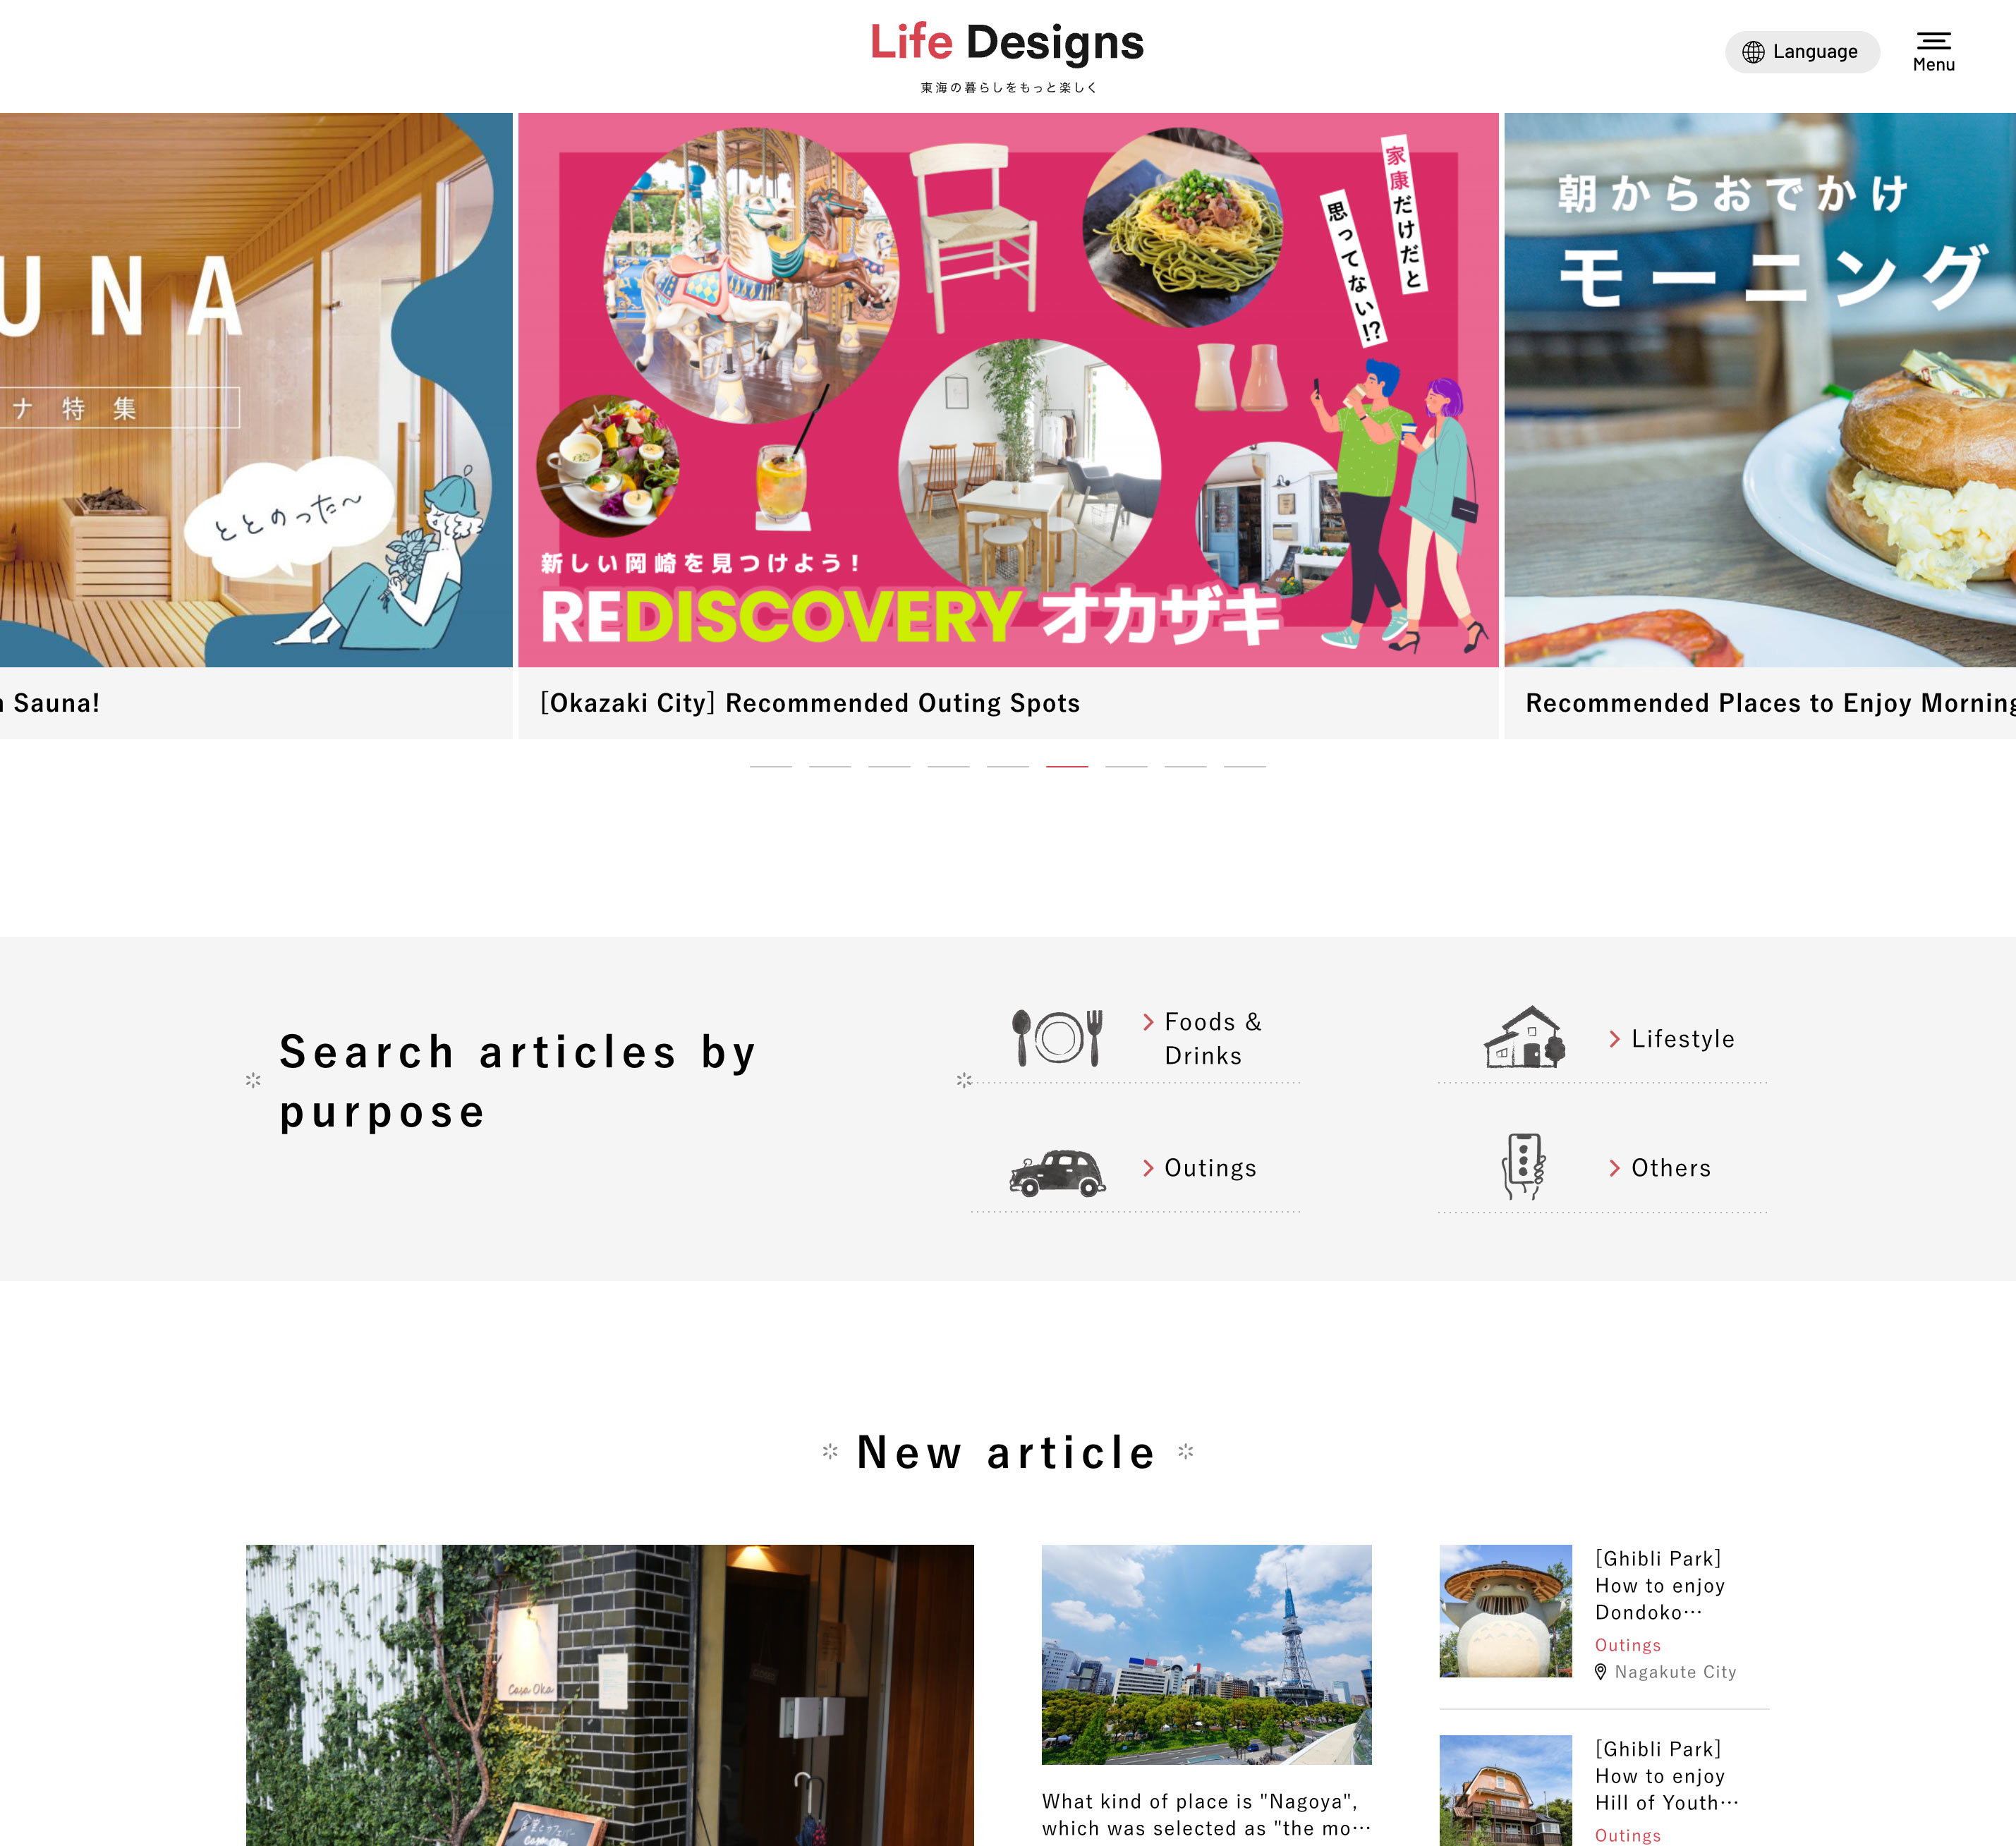 東海エリアのWebマガジン「ライフデザインズ」を多言語化しました。